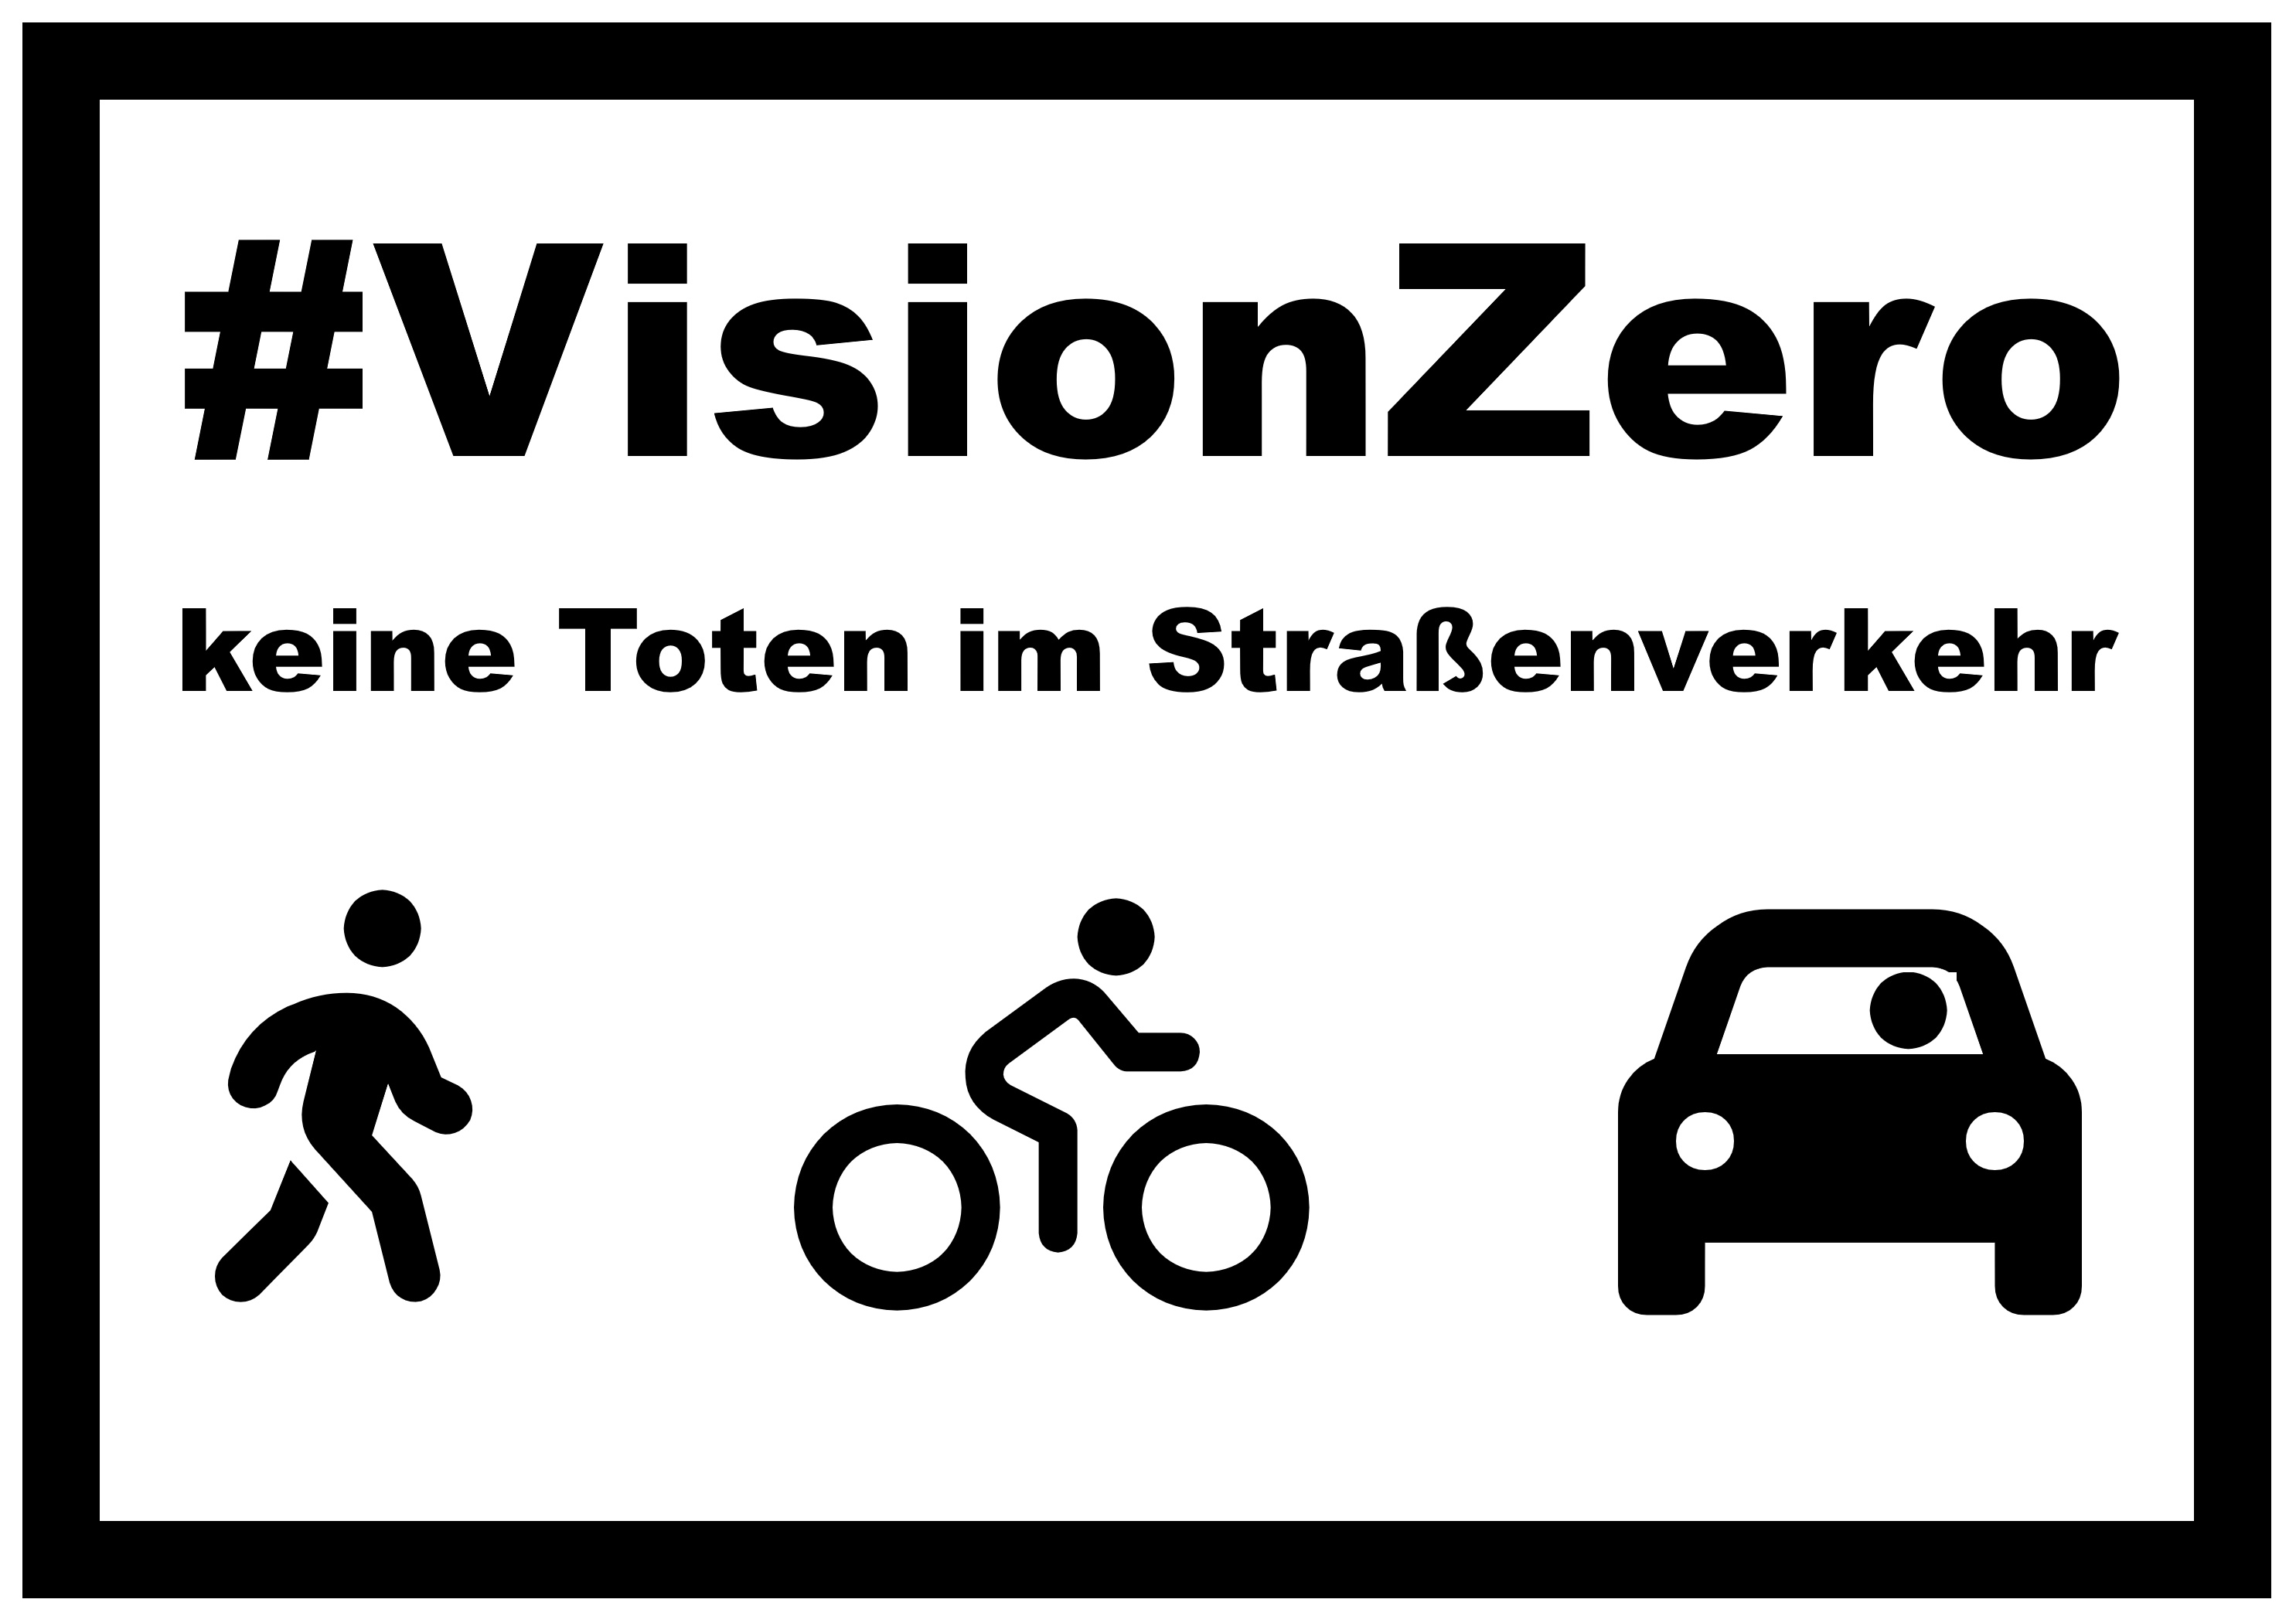 Vision Zero - keine Toten im Straßenverkehr